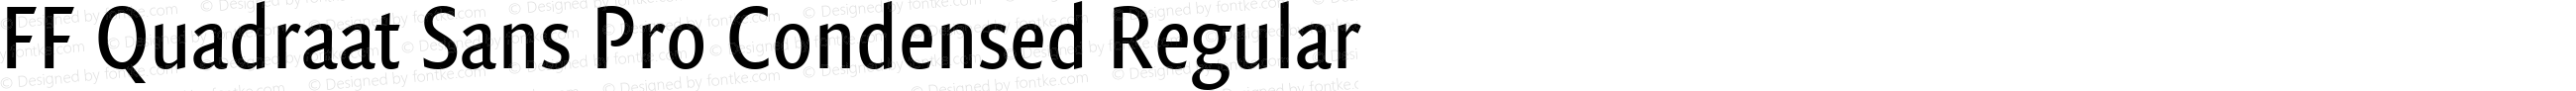 FF Quadraat Sans Pro Condensed Regular